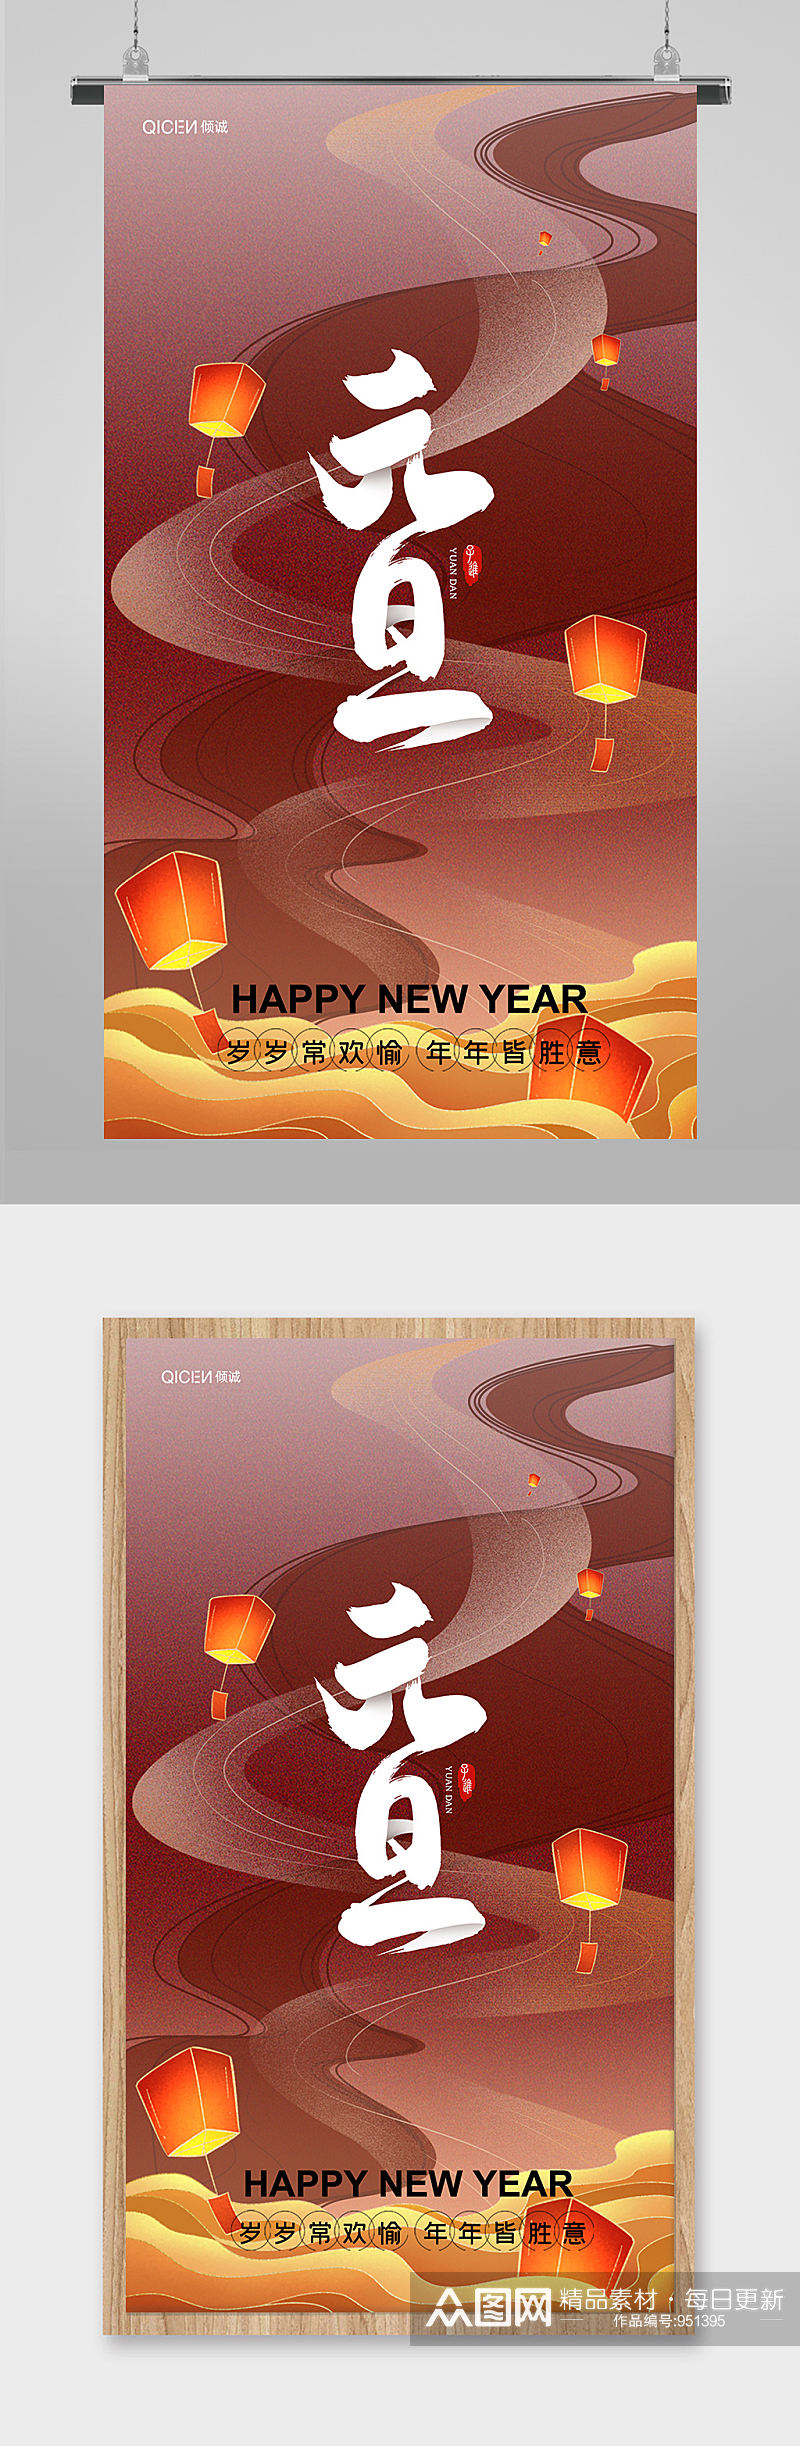 鎏金中国风喜庆2021年元旦新年快乐h5素材